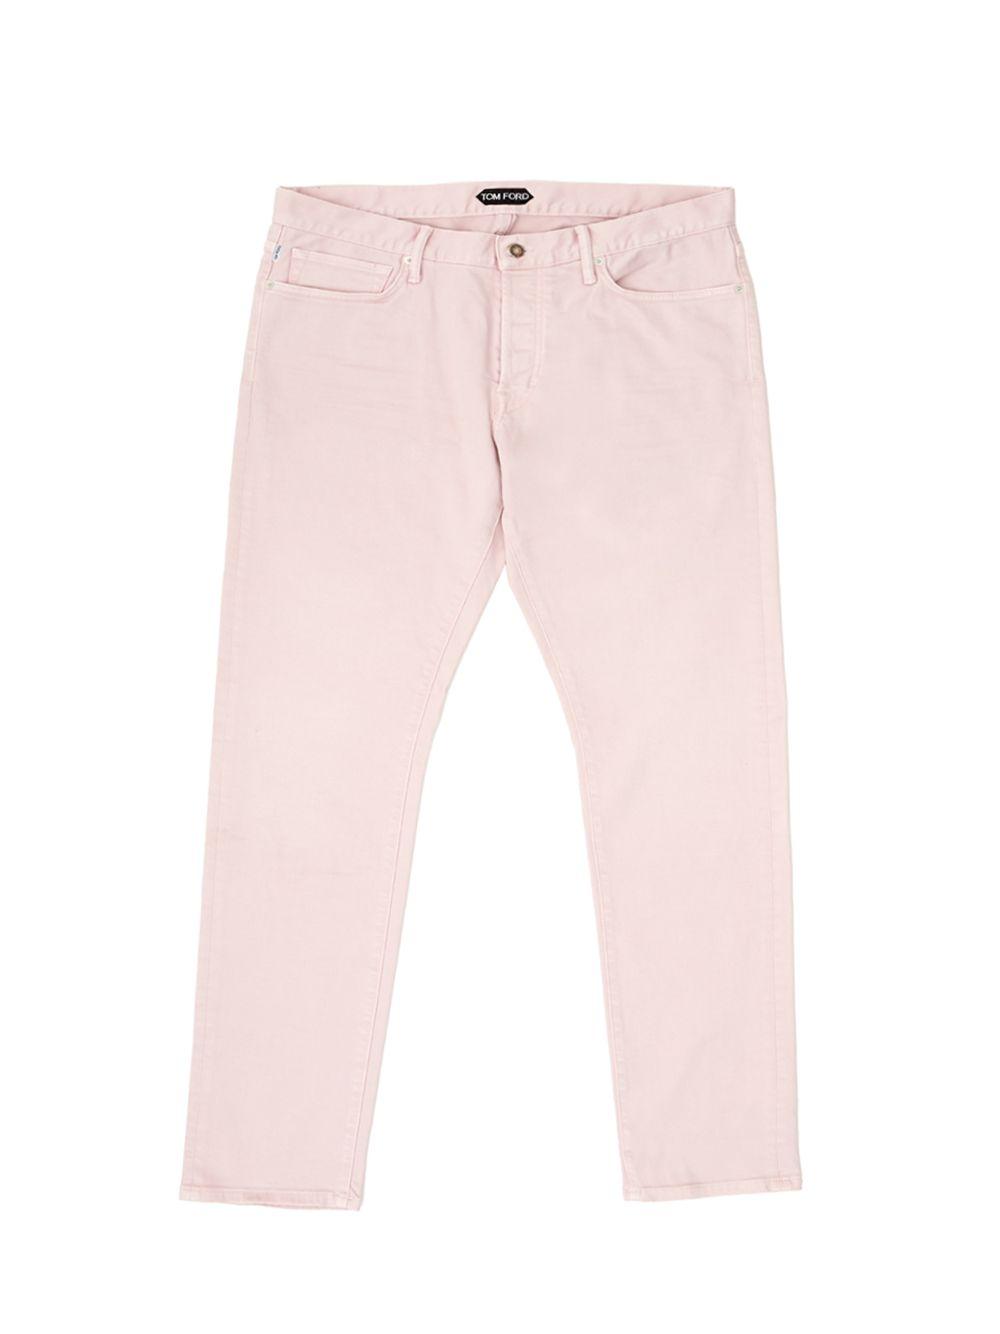 Tom Ford Pink Five Pockets Jeans Pants - Ellie Belle